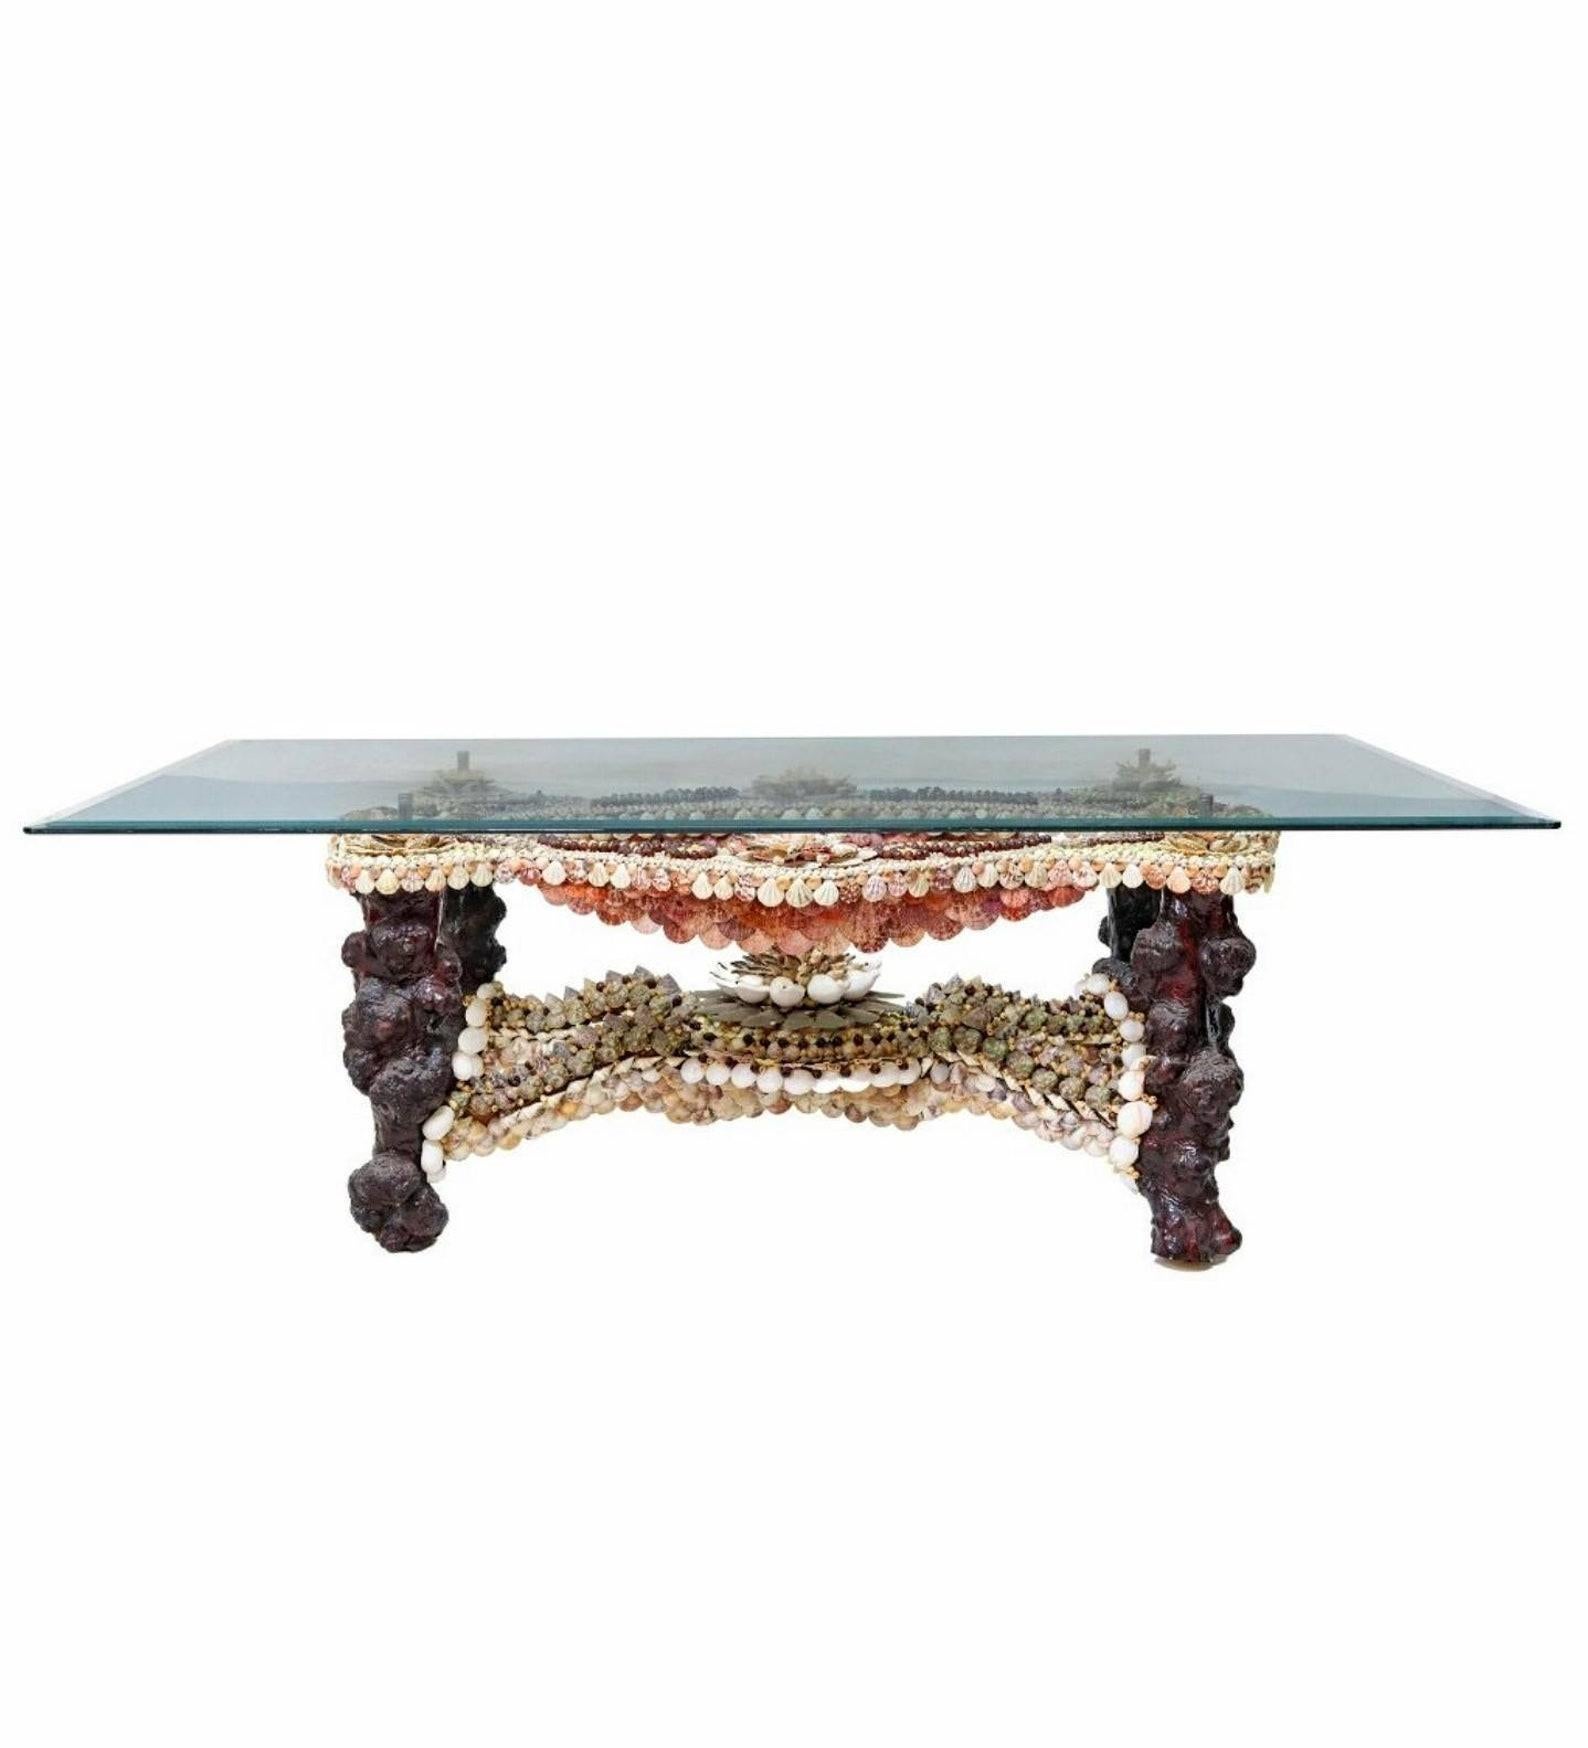 Ein spektakulärer Tisch mit Muscheldekoration, künstlerisches Einzelstück, außergewöhnlich ausgeführtes Design in der Art von Anthony Redmile (Brite, geb. 1940), aus dem späten 20. Jahrhundert, mit einer rechteckigen, abgeschrägten Glasplatte, über